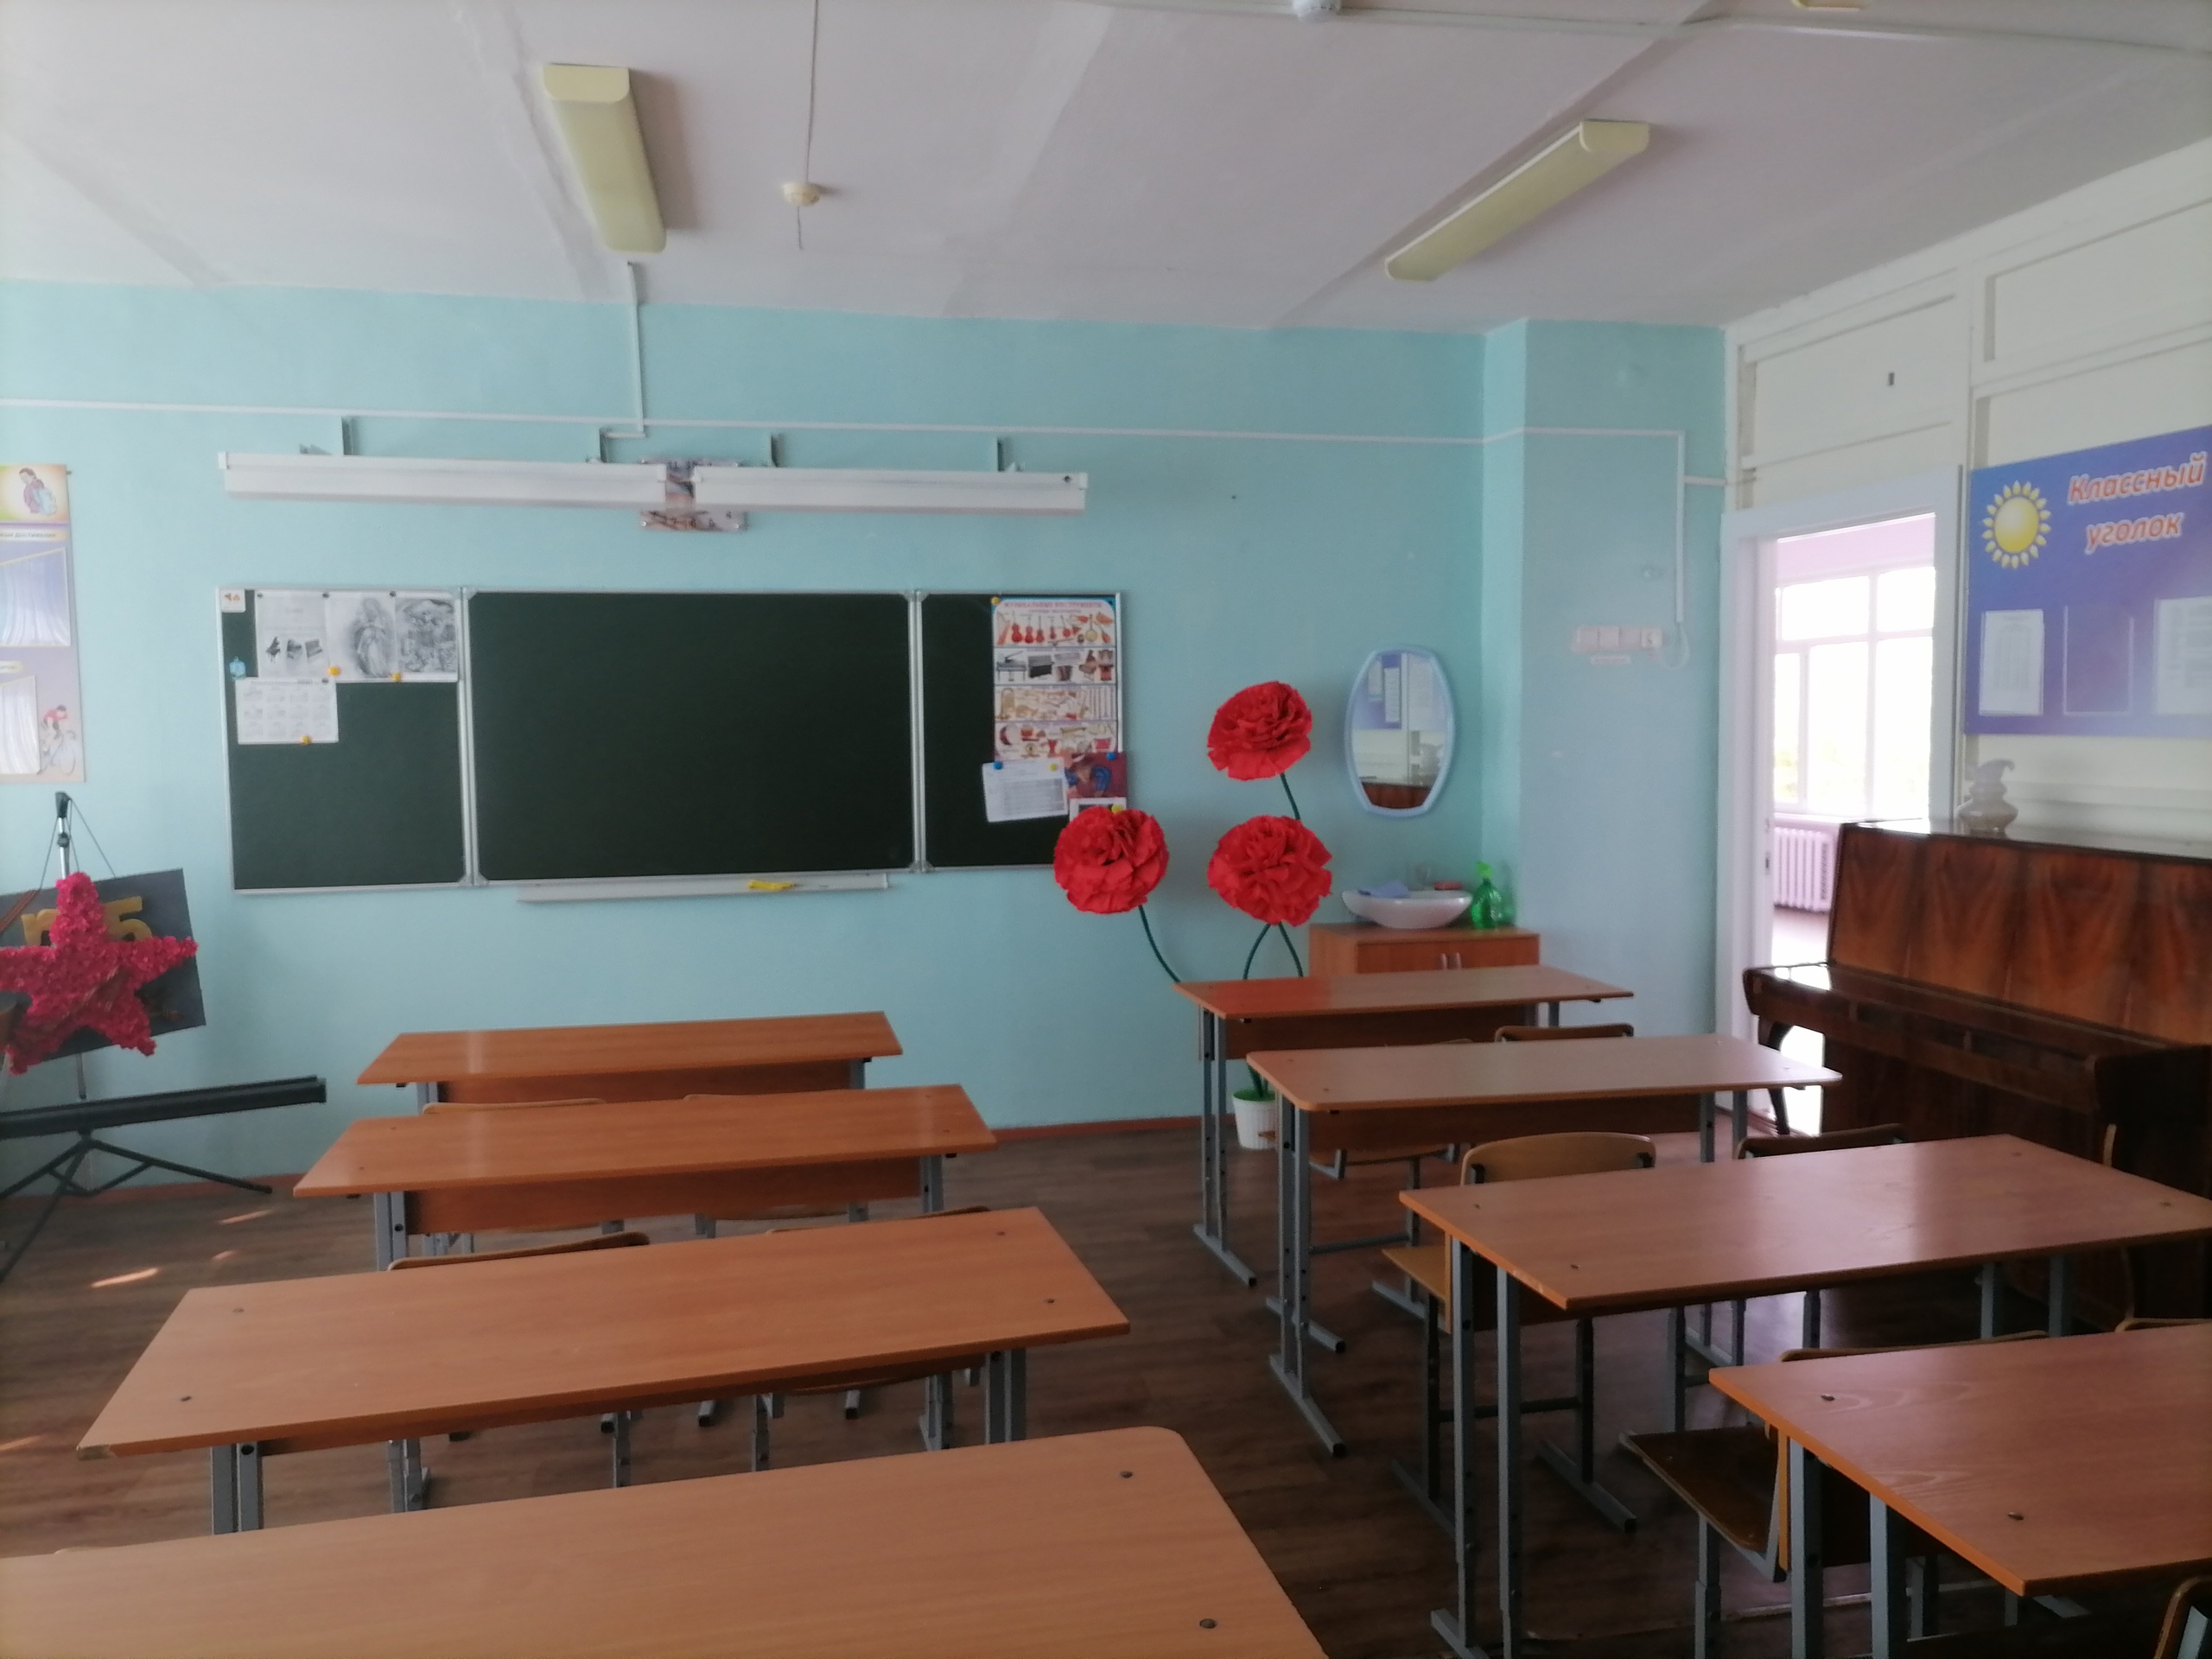 В Пензе детей хотят привлечь к уборке в школах 